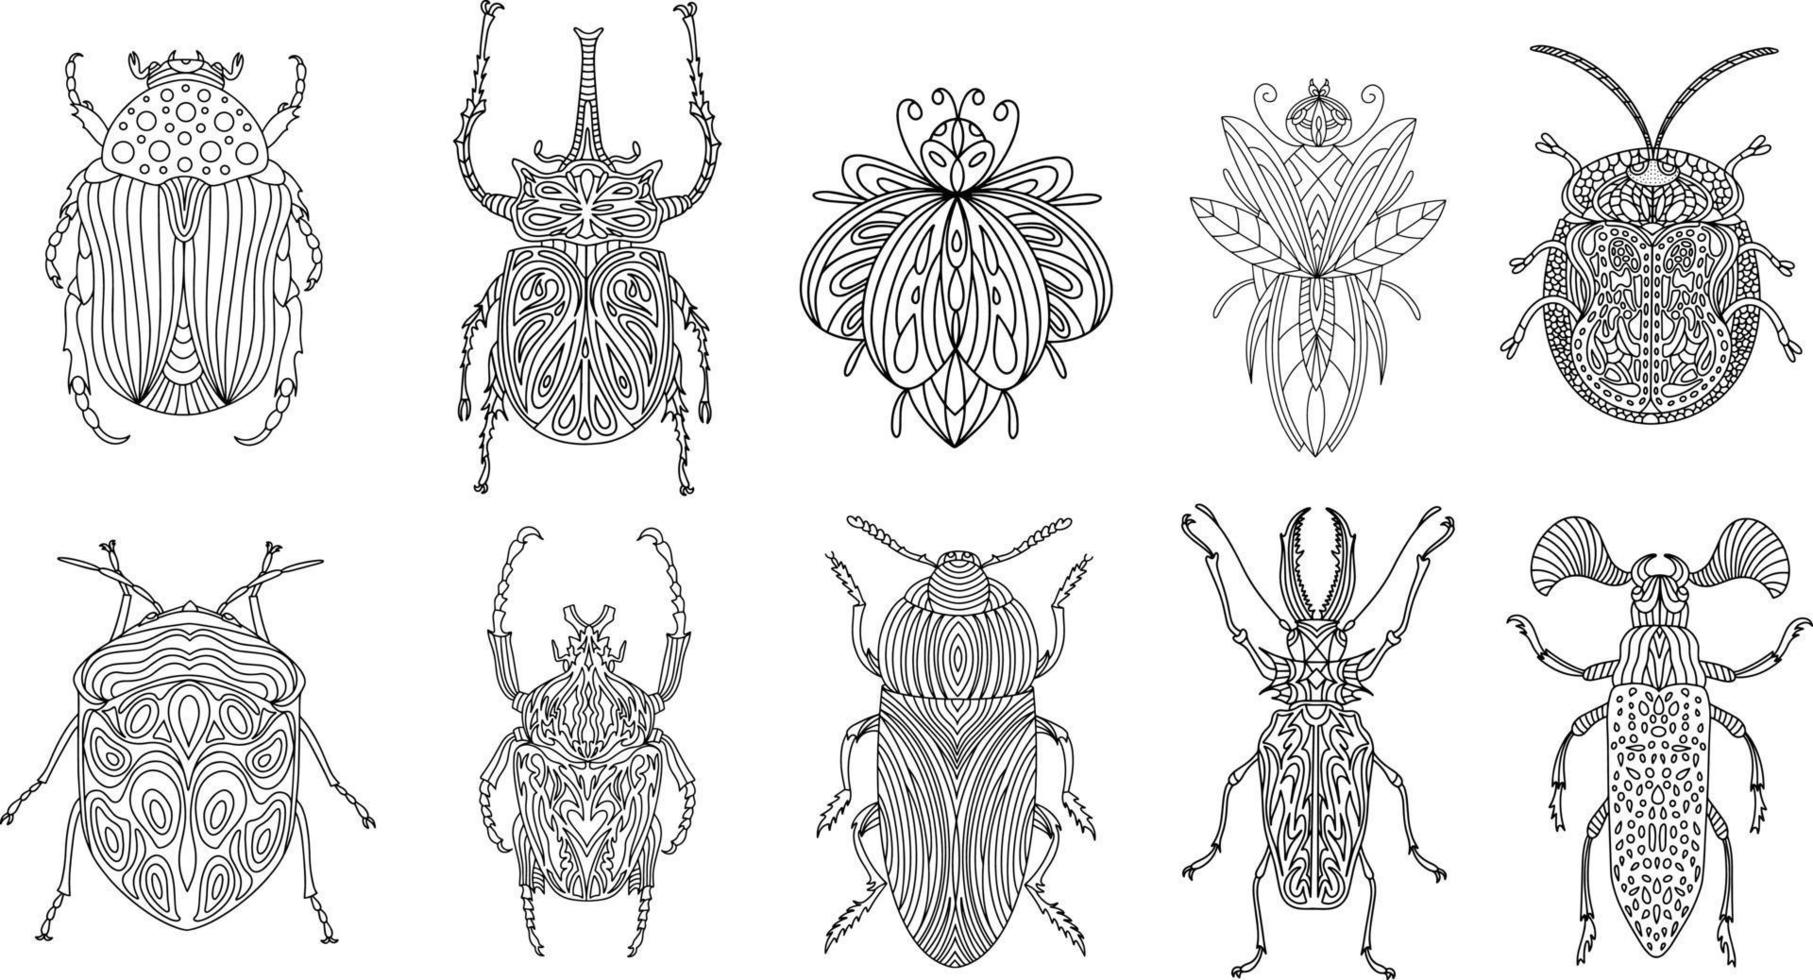 Reihe von Käfern und Insekten in einem linearen Stil. lineare Vektordarstellung vektor